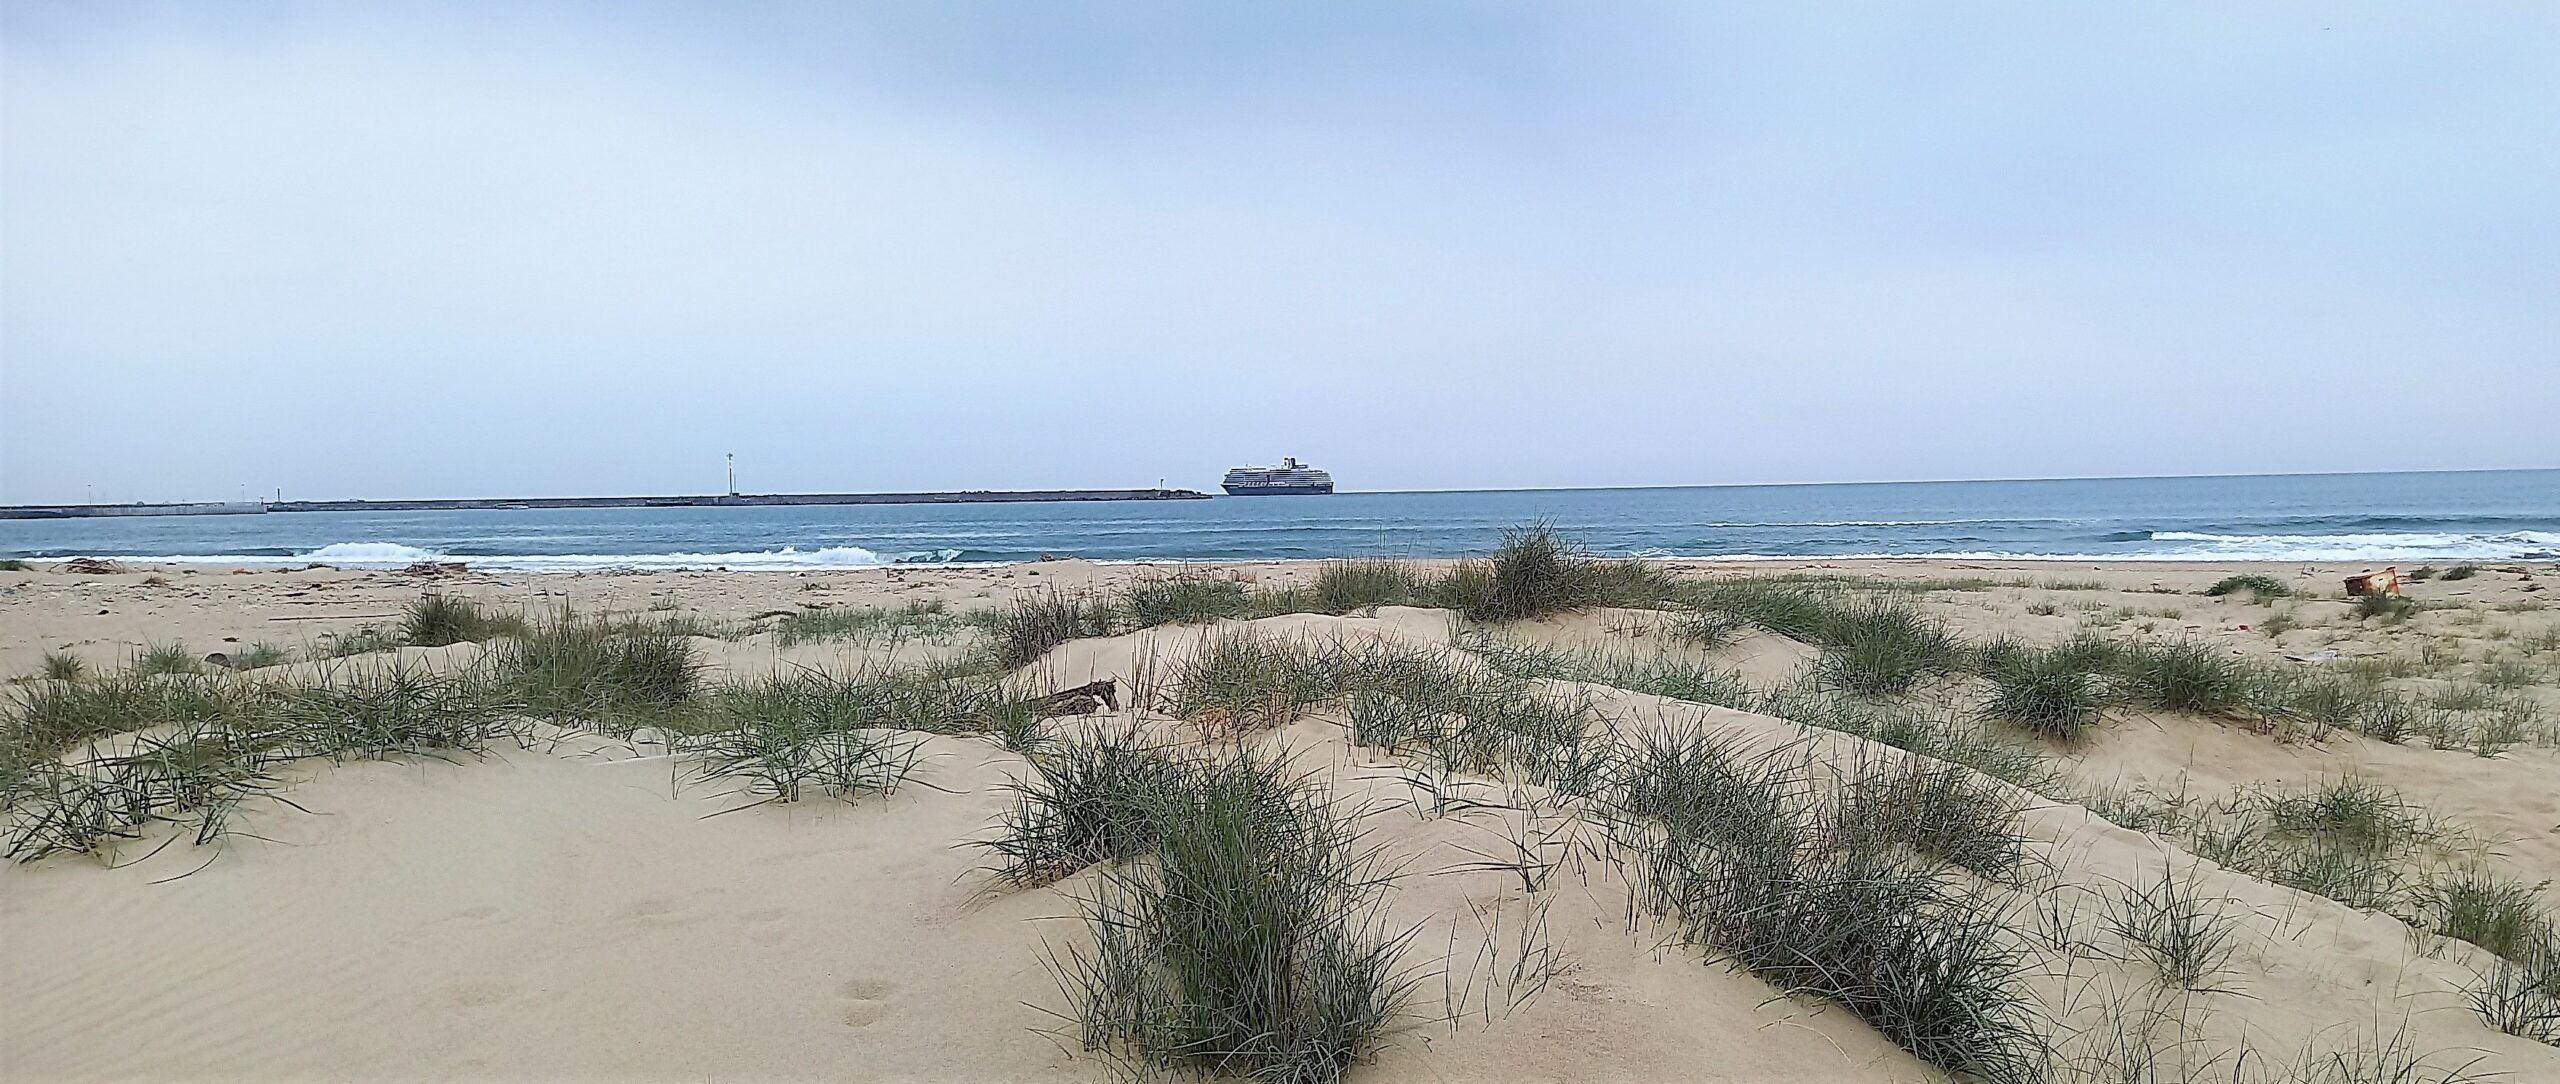 1mqdb la playa di catania sono distese di dune che meritano tornare interamente risorsa rigenerativa planetaria congiungimento oasy del simeto